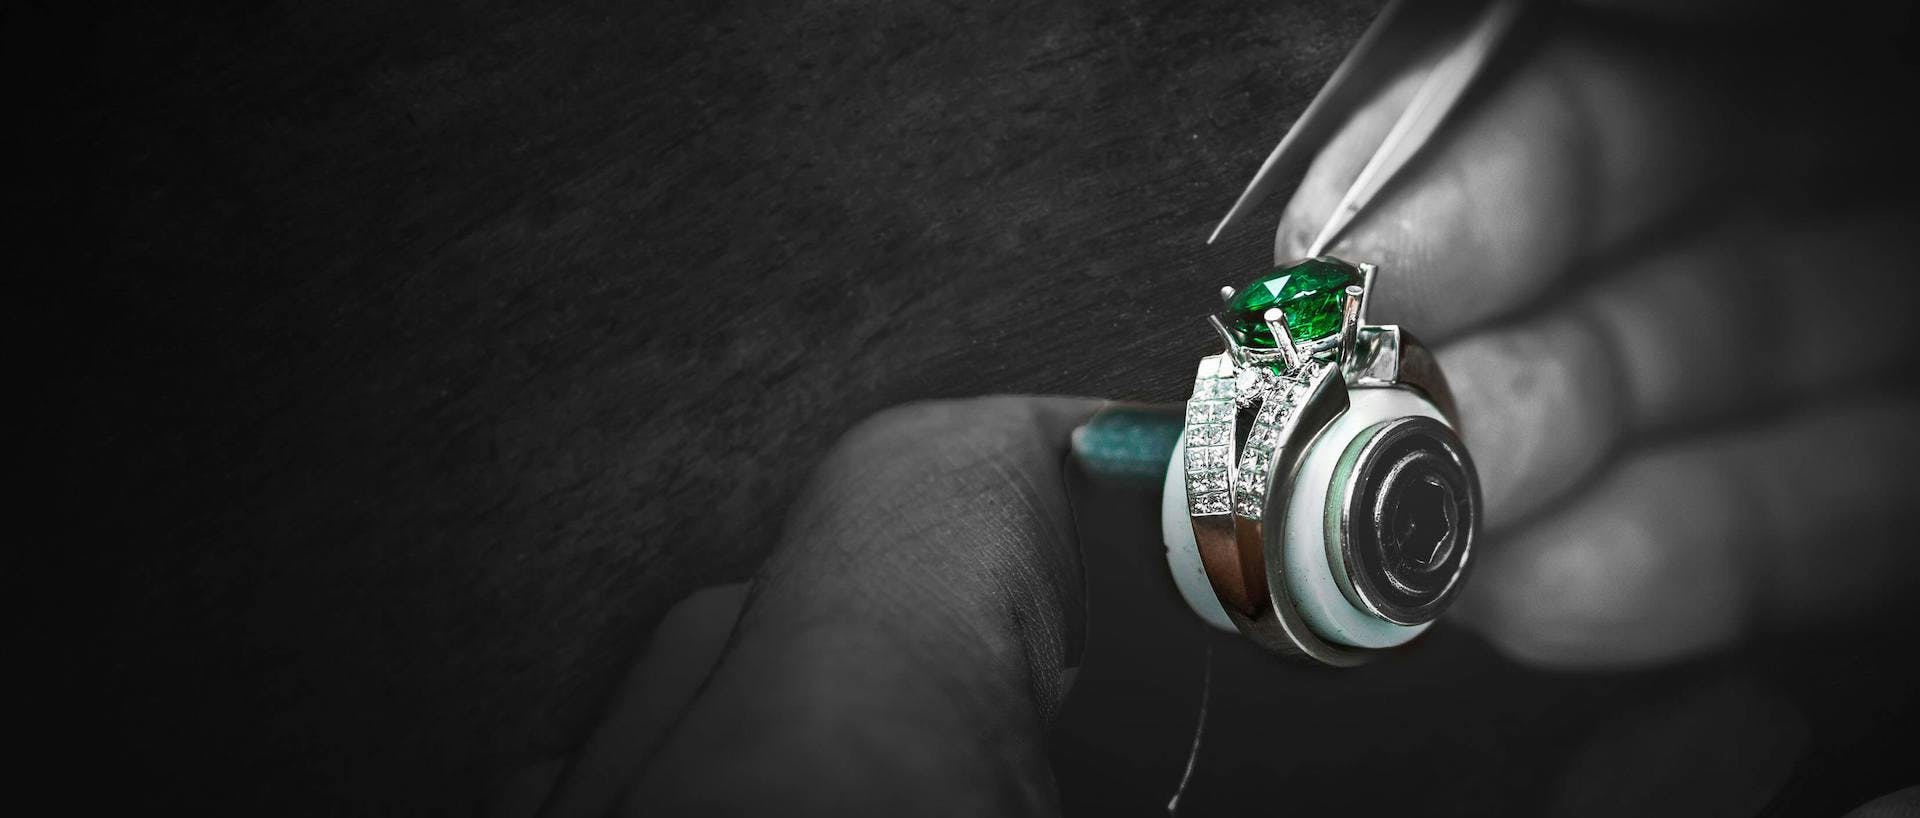 立藝珠寶 工藝 鑽石寶石鑲嵌 天然綠寶 18K 袓母綠鑽石高級戒指